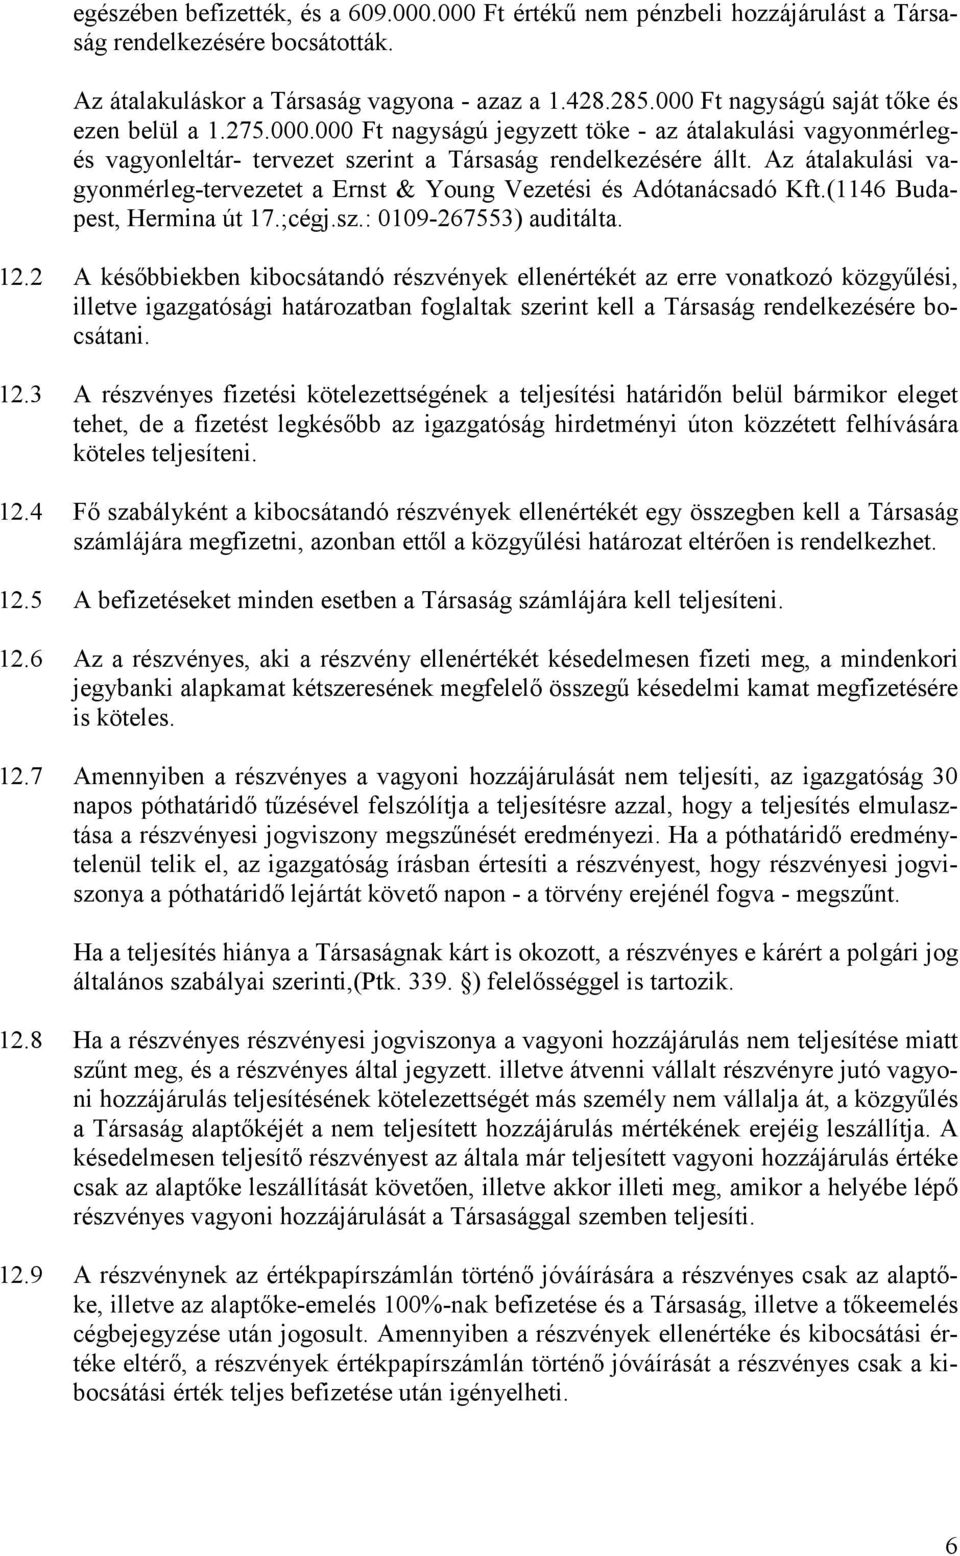 Az átalakulási vagyonmérleg-tervezetet a Ernst & Young Vezetési és Adótanácsadó Kft.(1146 Budapest, Hermina út 17.;cégj.sz.: 0109-267553) auditálta. 12.